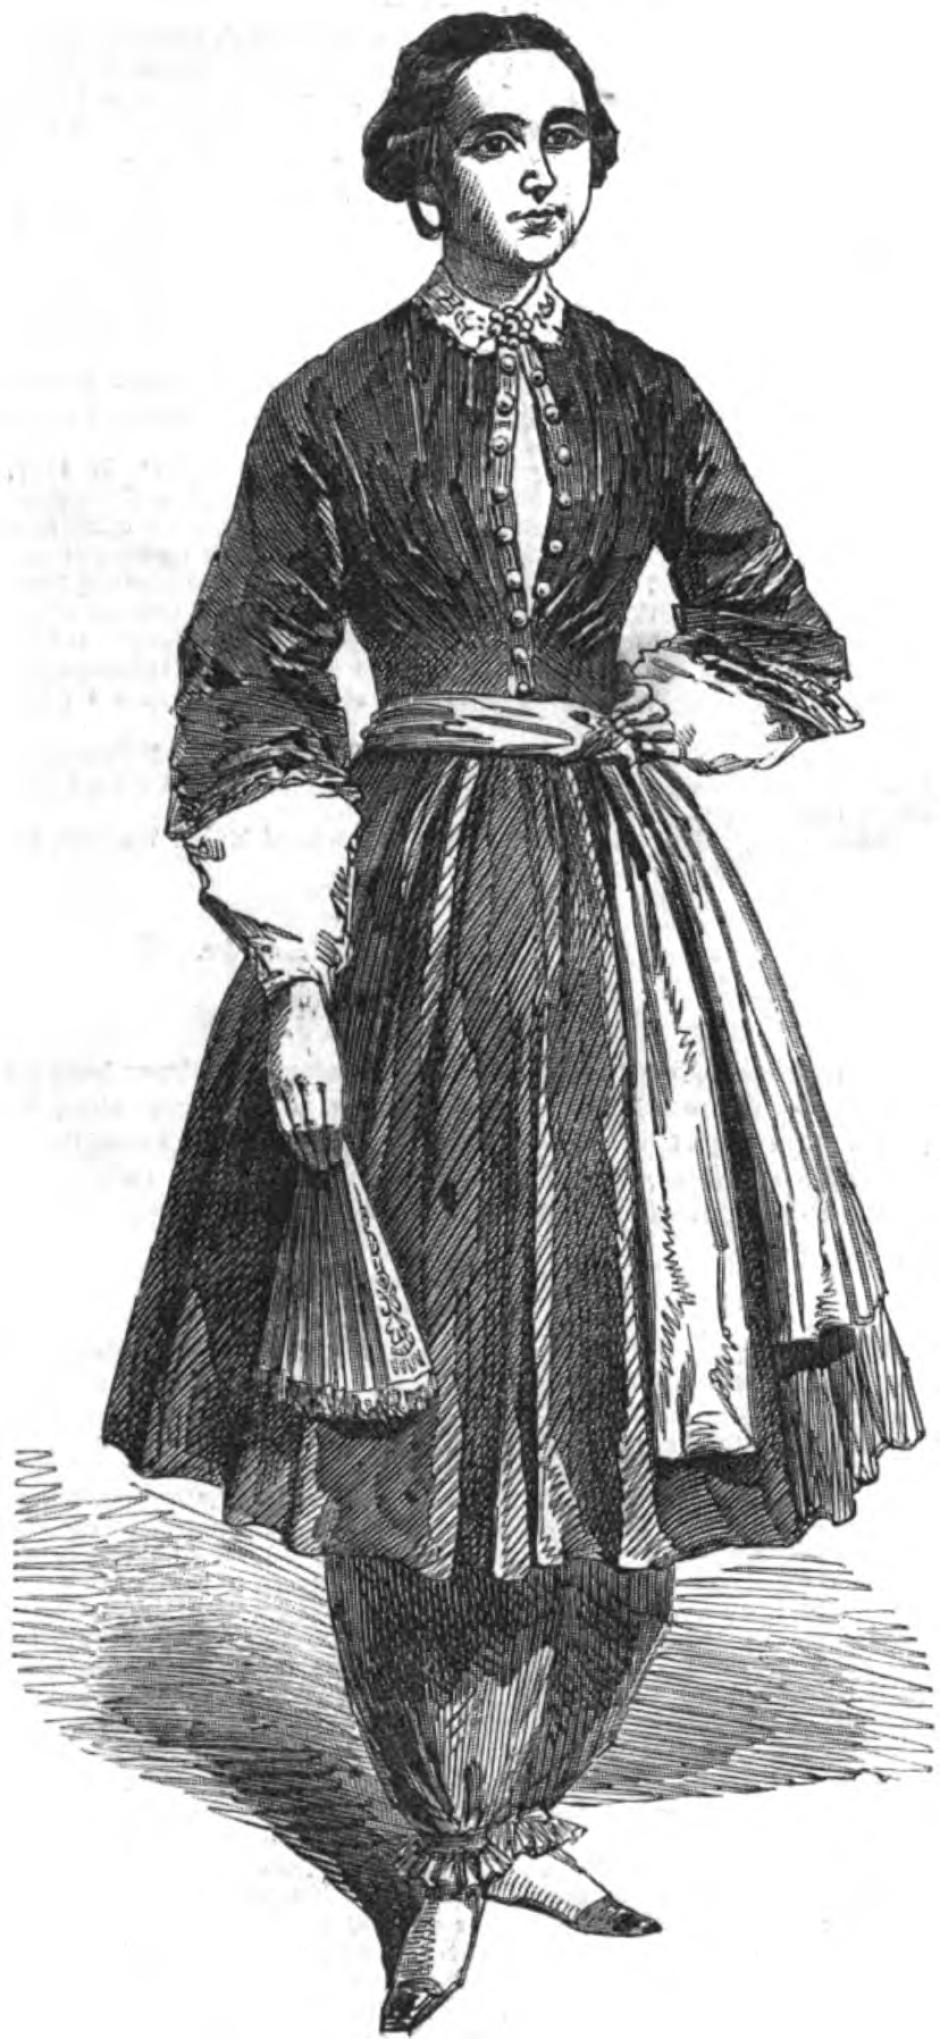 Representación de Amelia Bloomer con el famoso disfraz de "bloomer" que lleva su nombre